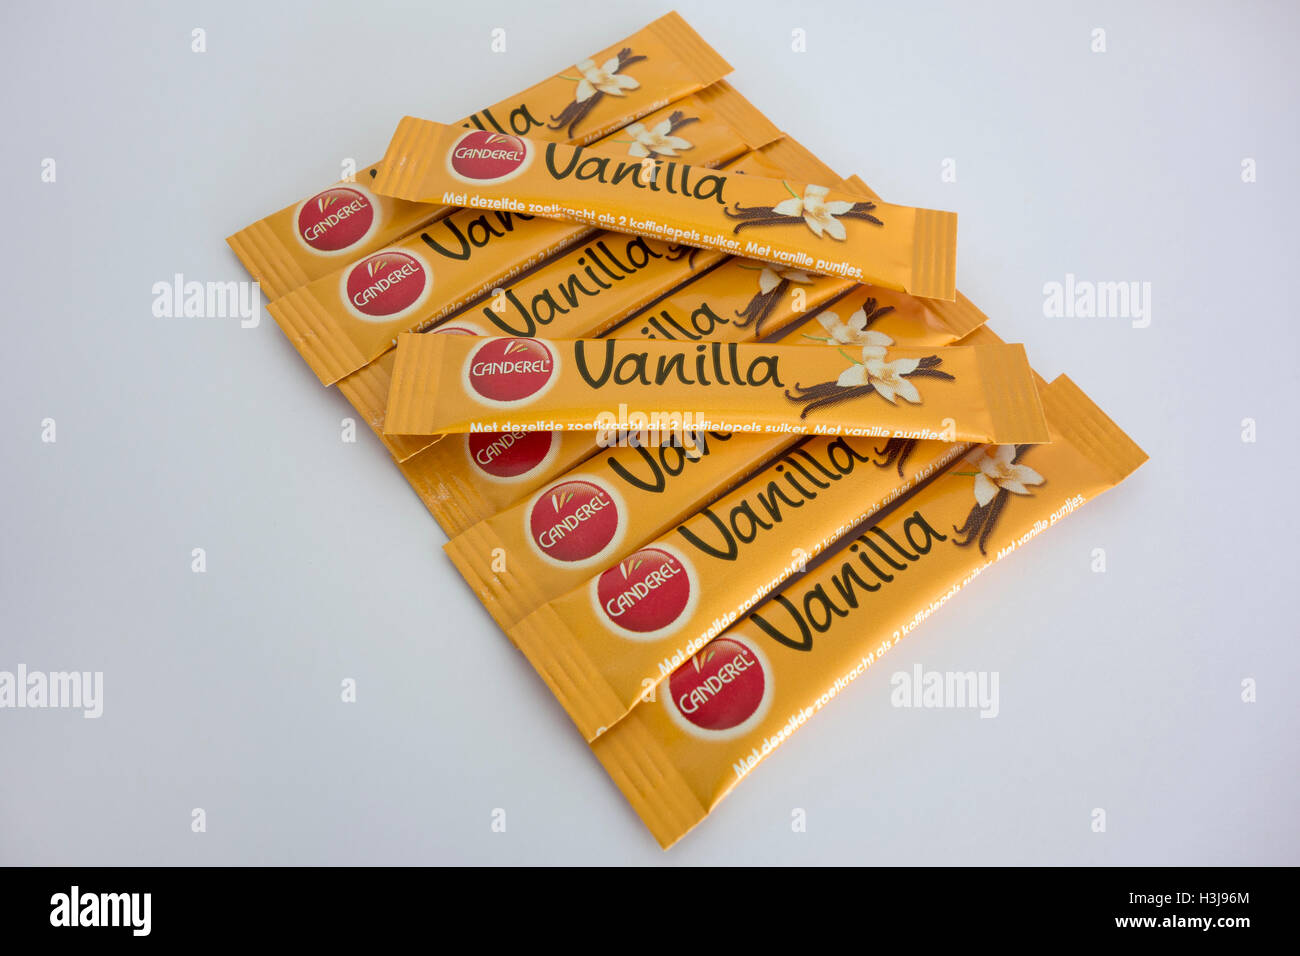 Vanilla - Canderel - 50 sticks